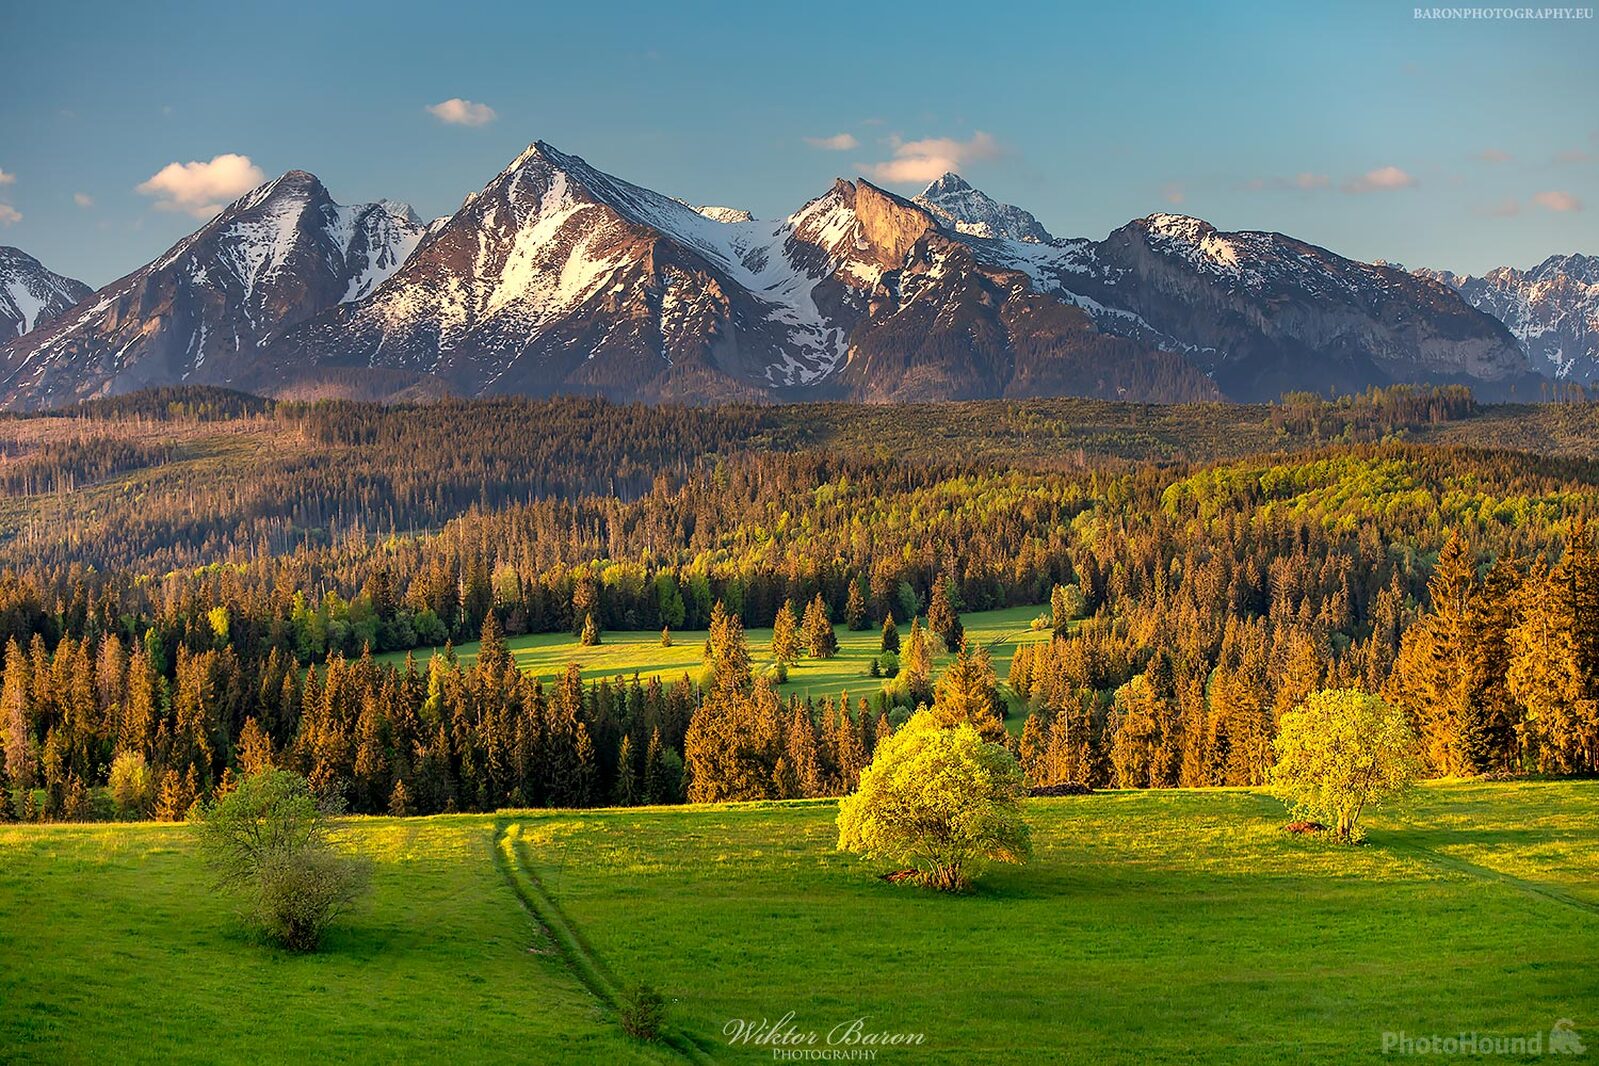 Image of View of Tatra Mountains, Łapszanka by Wiktor Baron